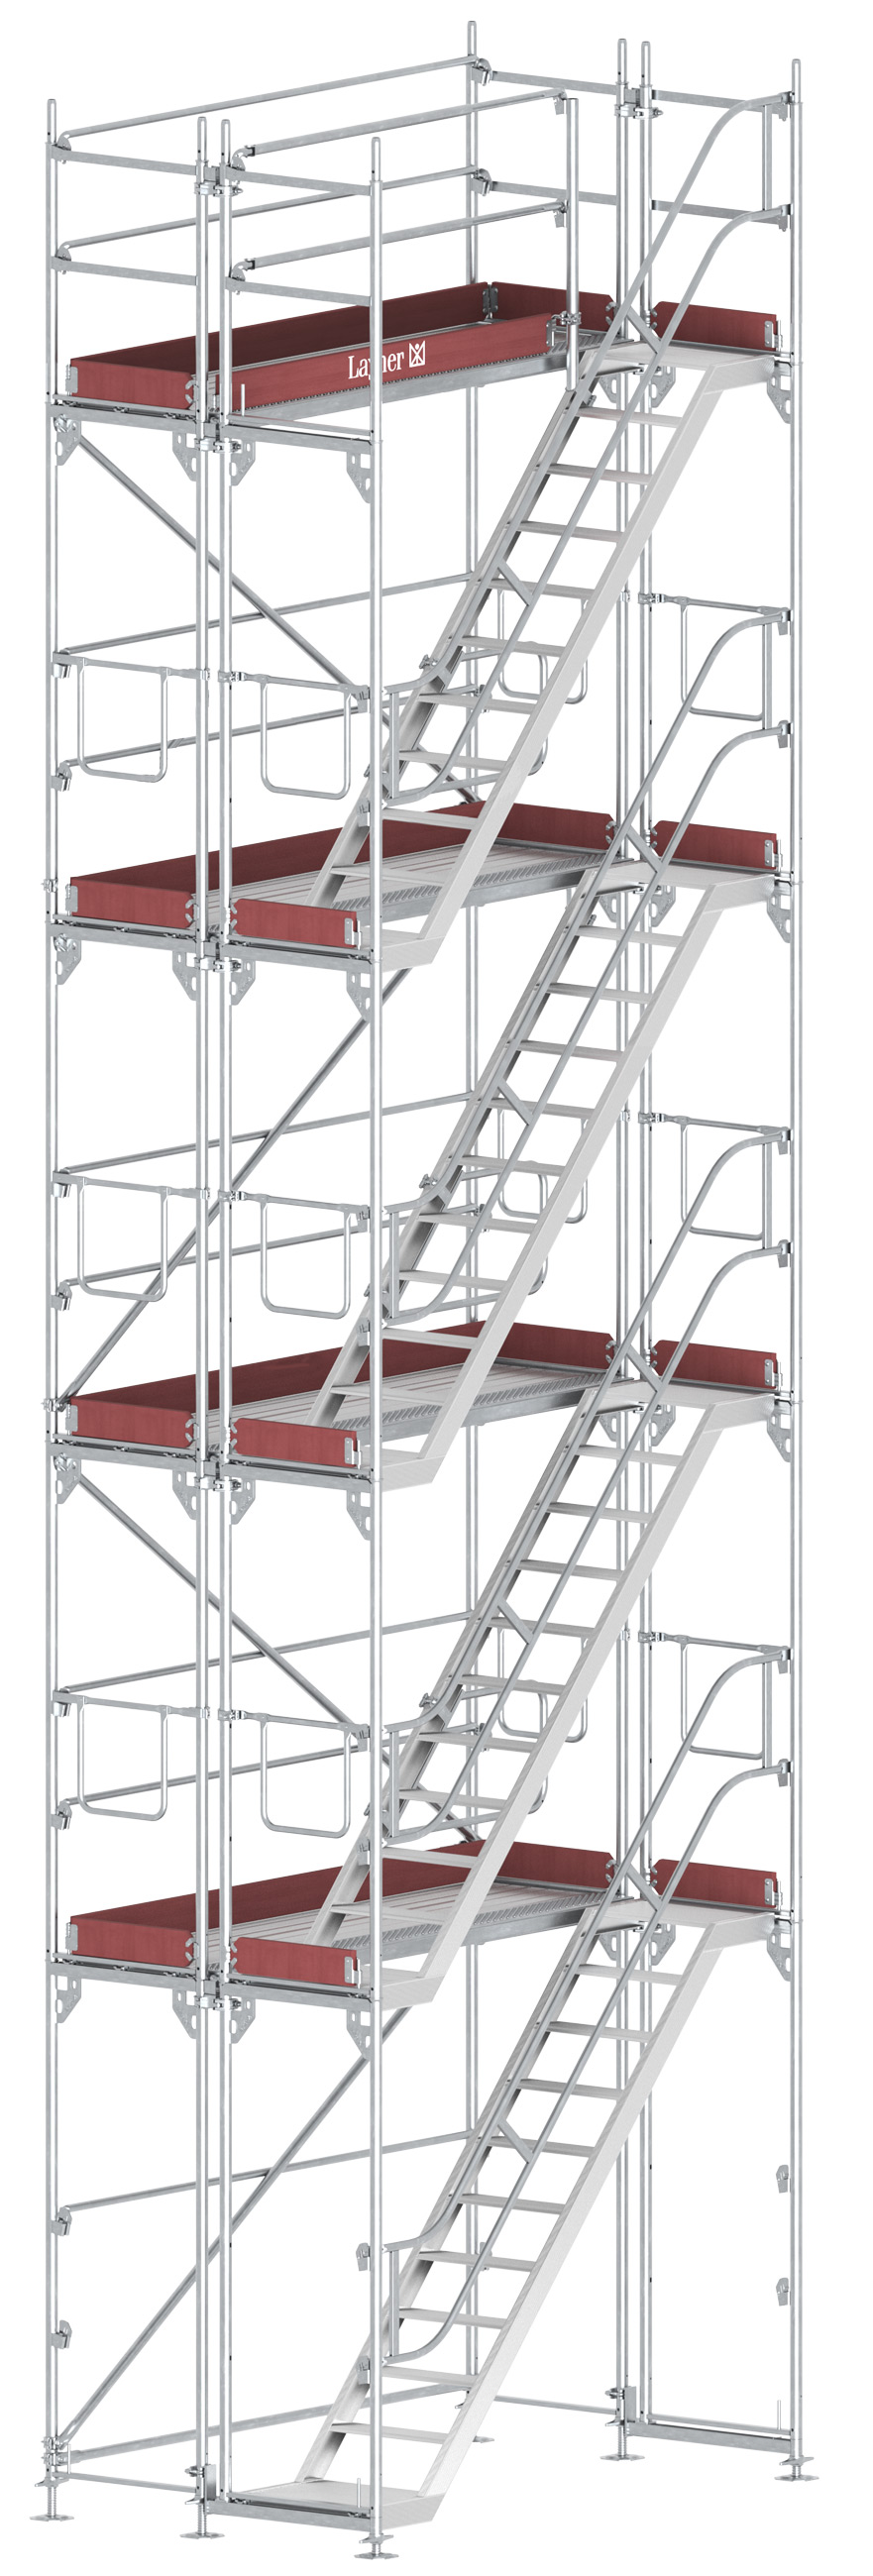 Layher Blitz Treppenturm Stahl - 2,57 x 8,20 m Gerüsttreppenturm Fassadengerüst- komfortabler Aufstieg nach TRBS 2121-2 (LG-1753-0800-S) Bild-01